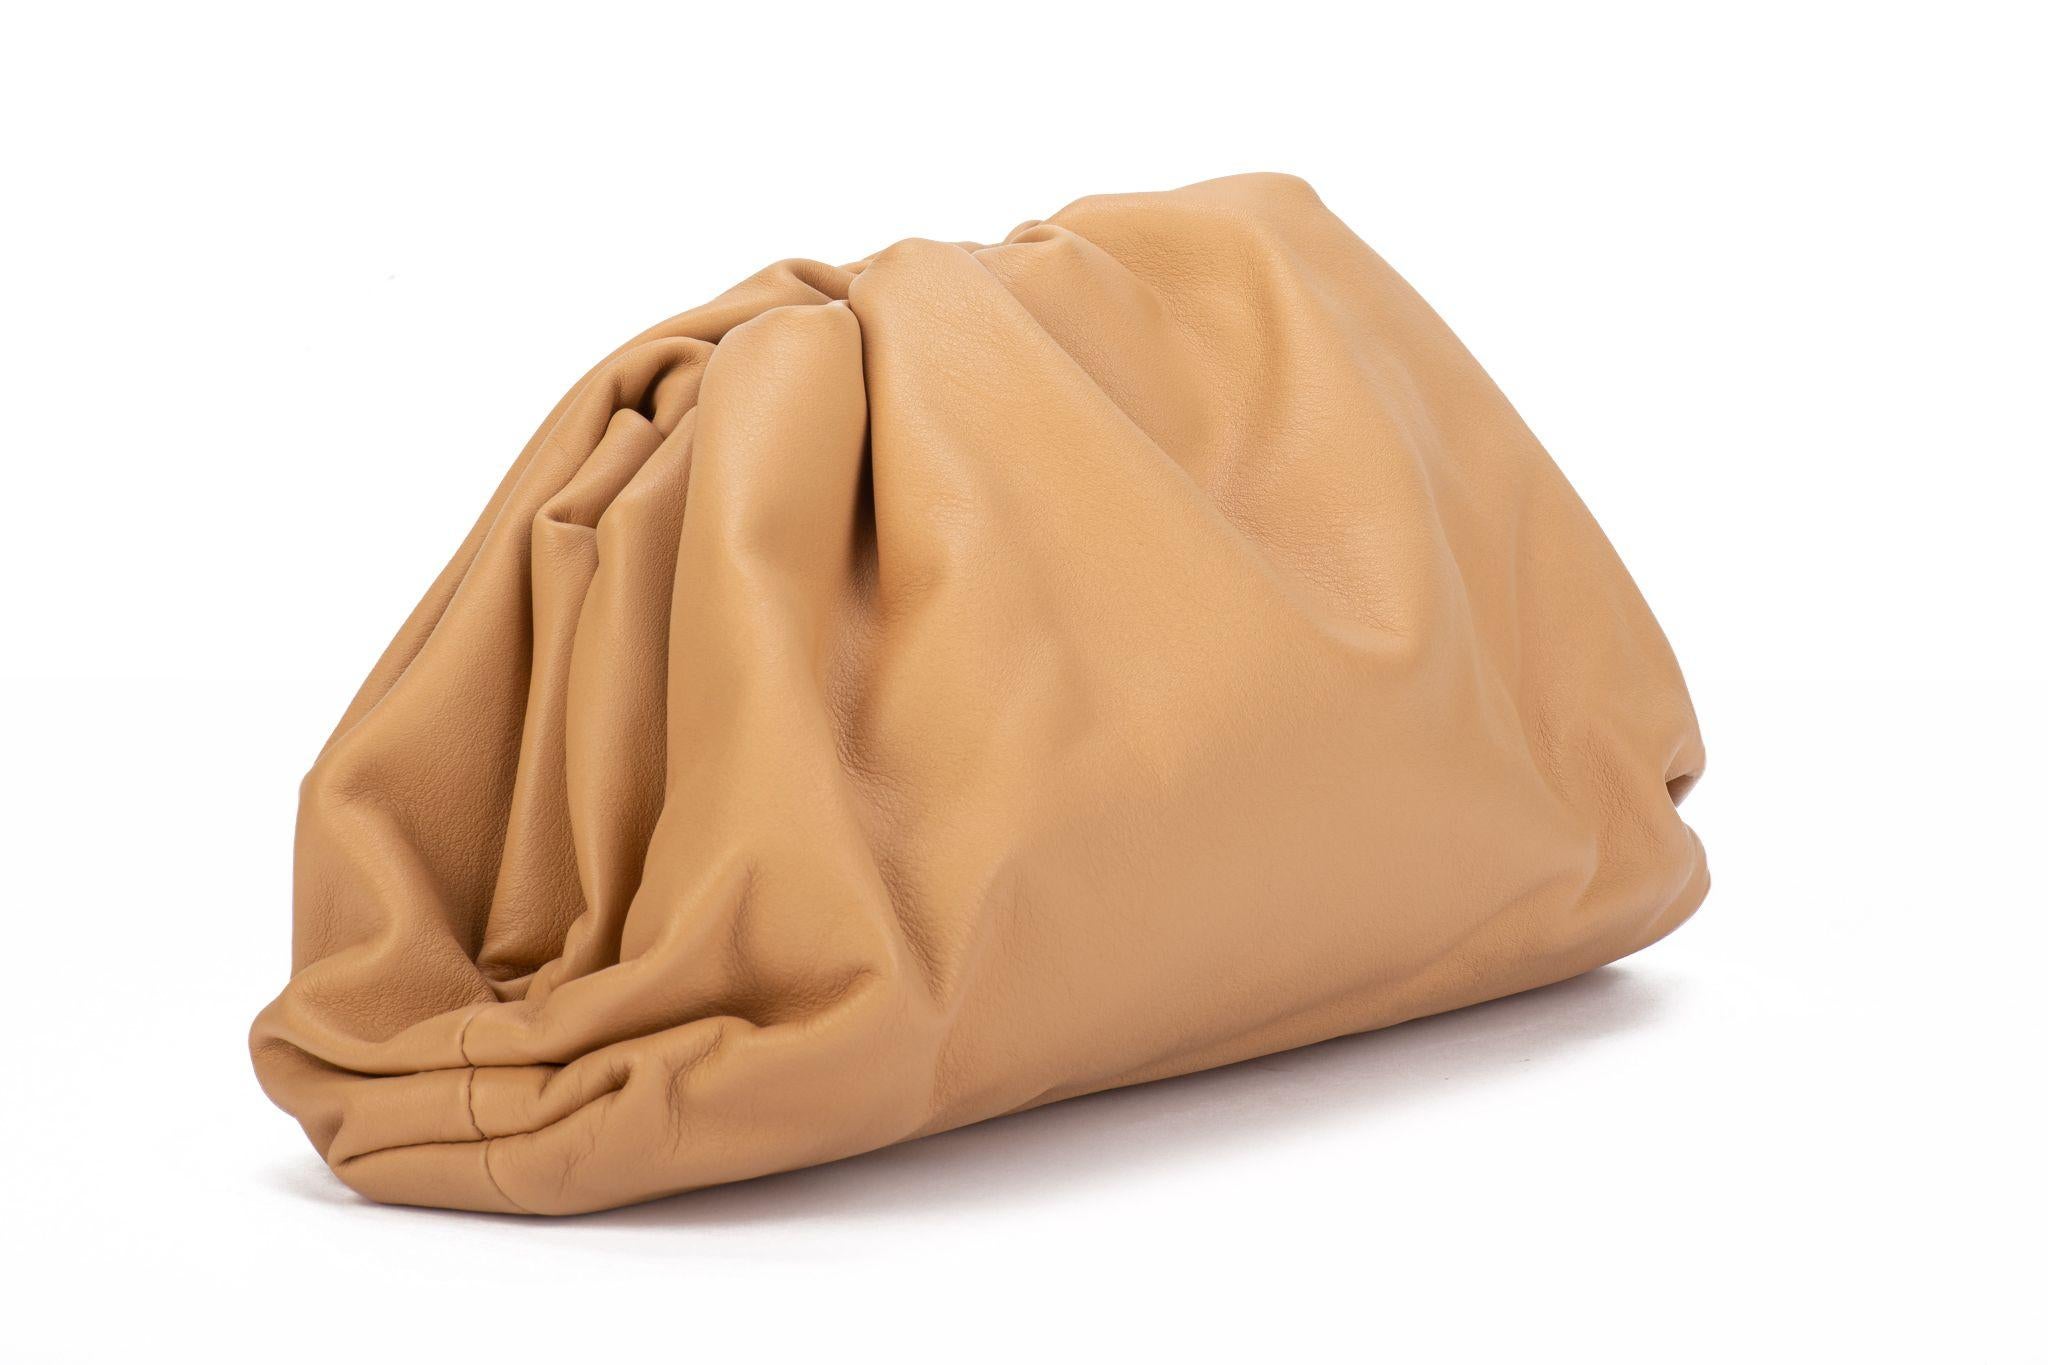 Bottega Veneta neue sehr gefragte mandelförmige beige Teenie-Tasche. Kommt mit Booklet und Original-Schutzumschlag.
